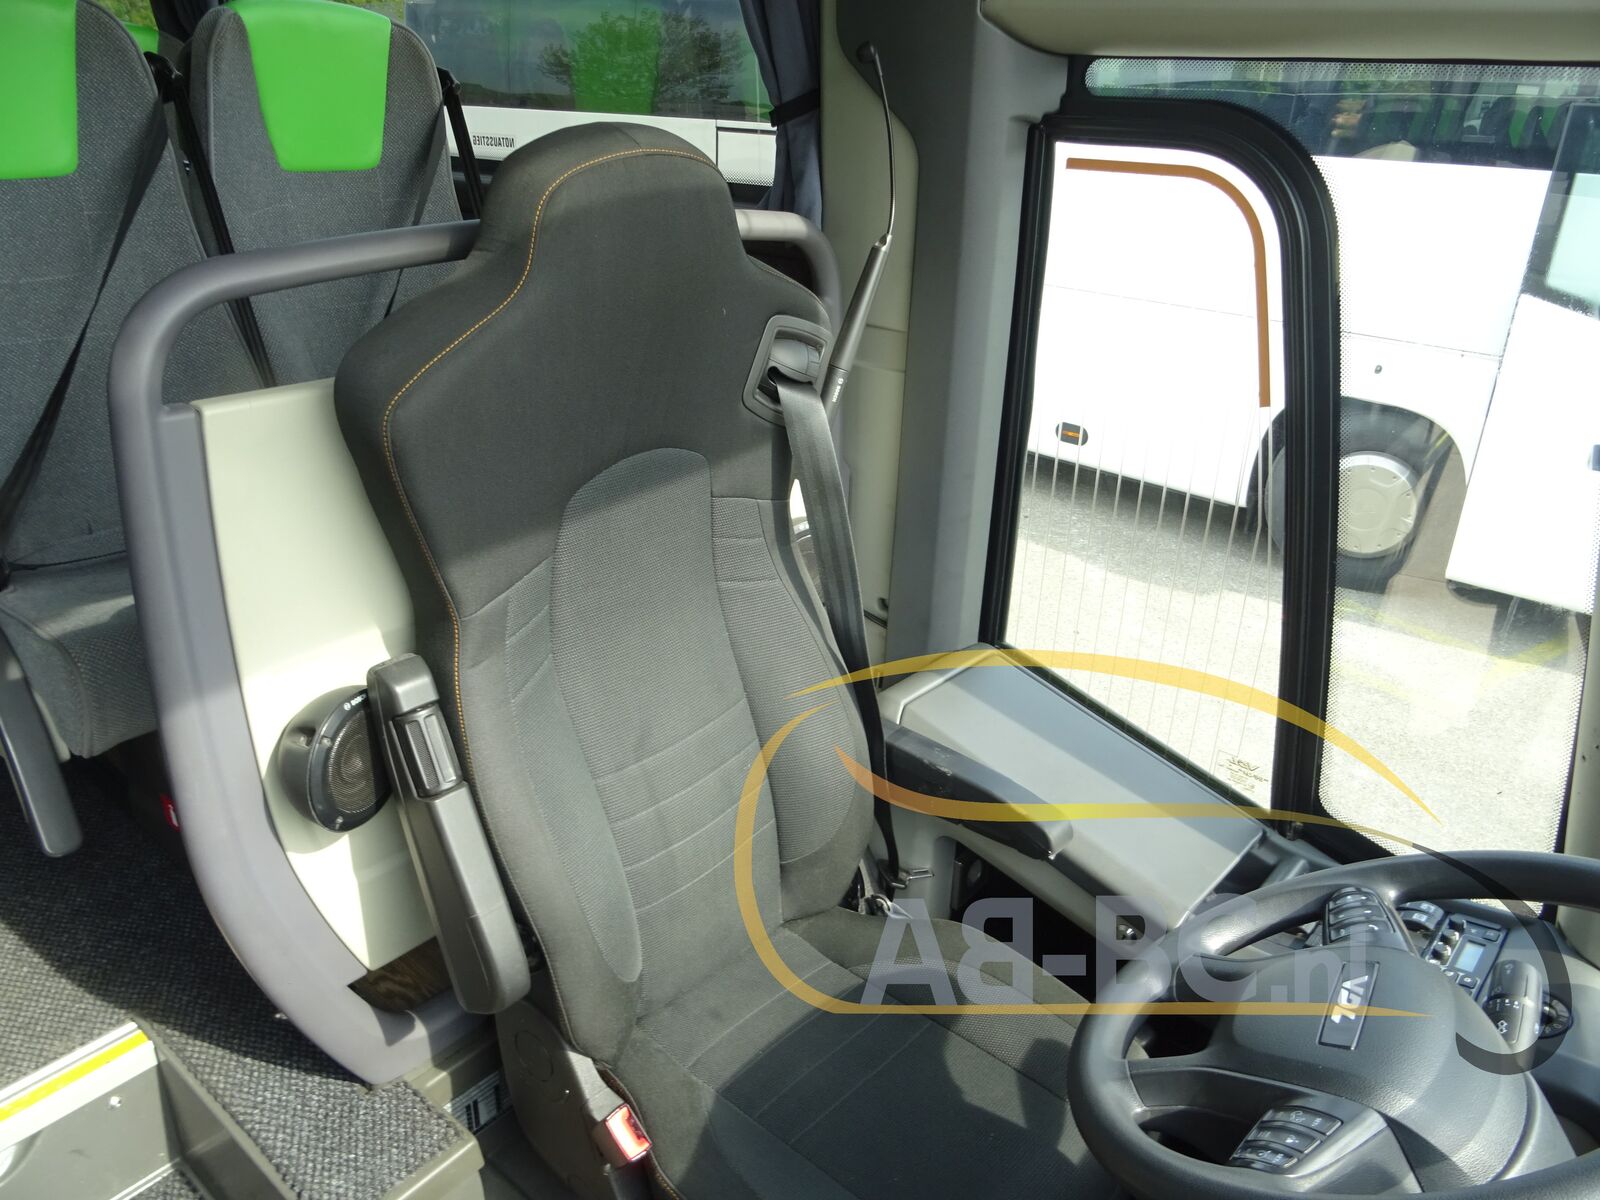 coach-bus-VDL-Futura-FHD2-129-440-51-Seats-EURO-6---1651224574744251978_orig_1a19d6eab4774a8c9a09205d4baa249a--22042912260636414000